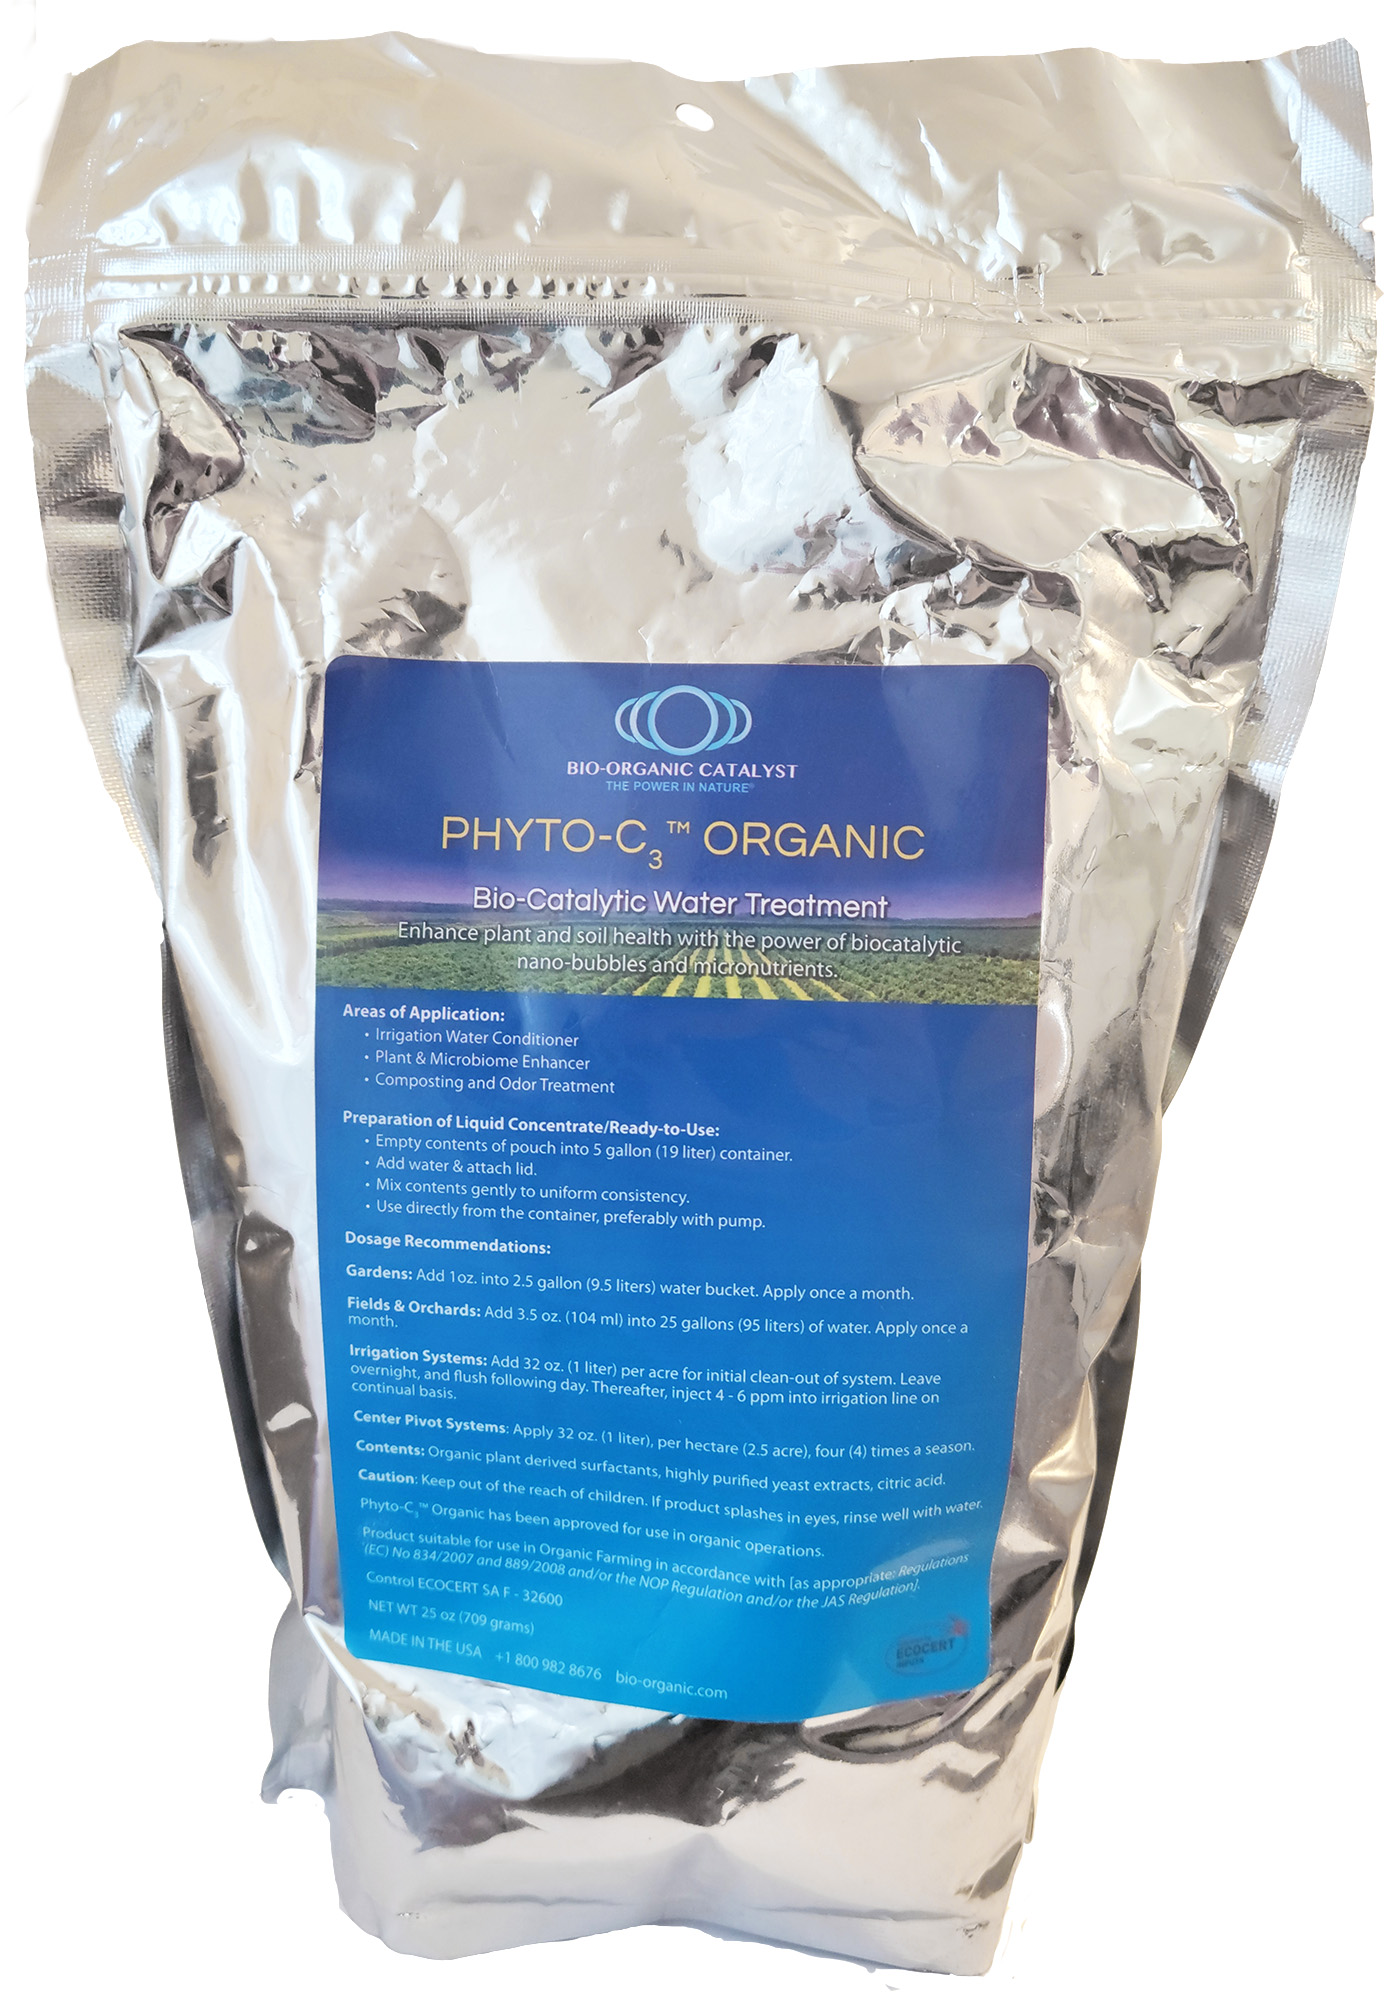 Phyto-C3 25 oz Organic Powder